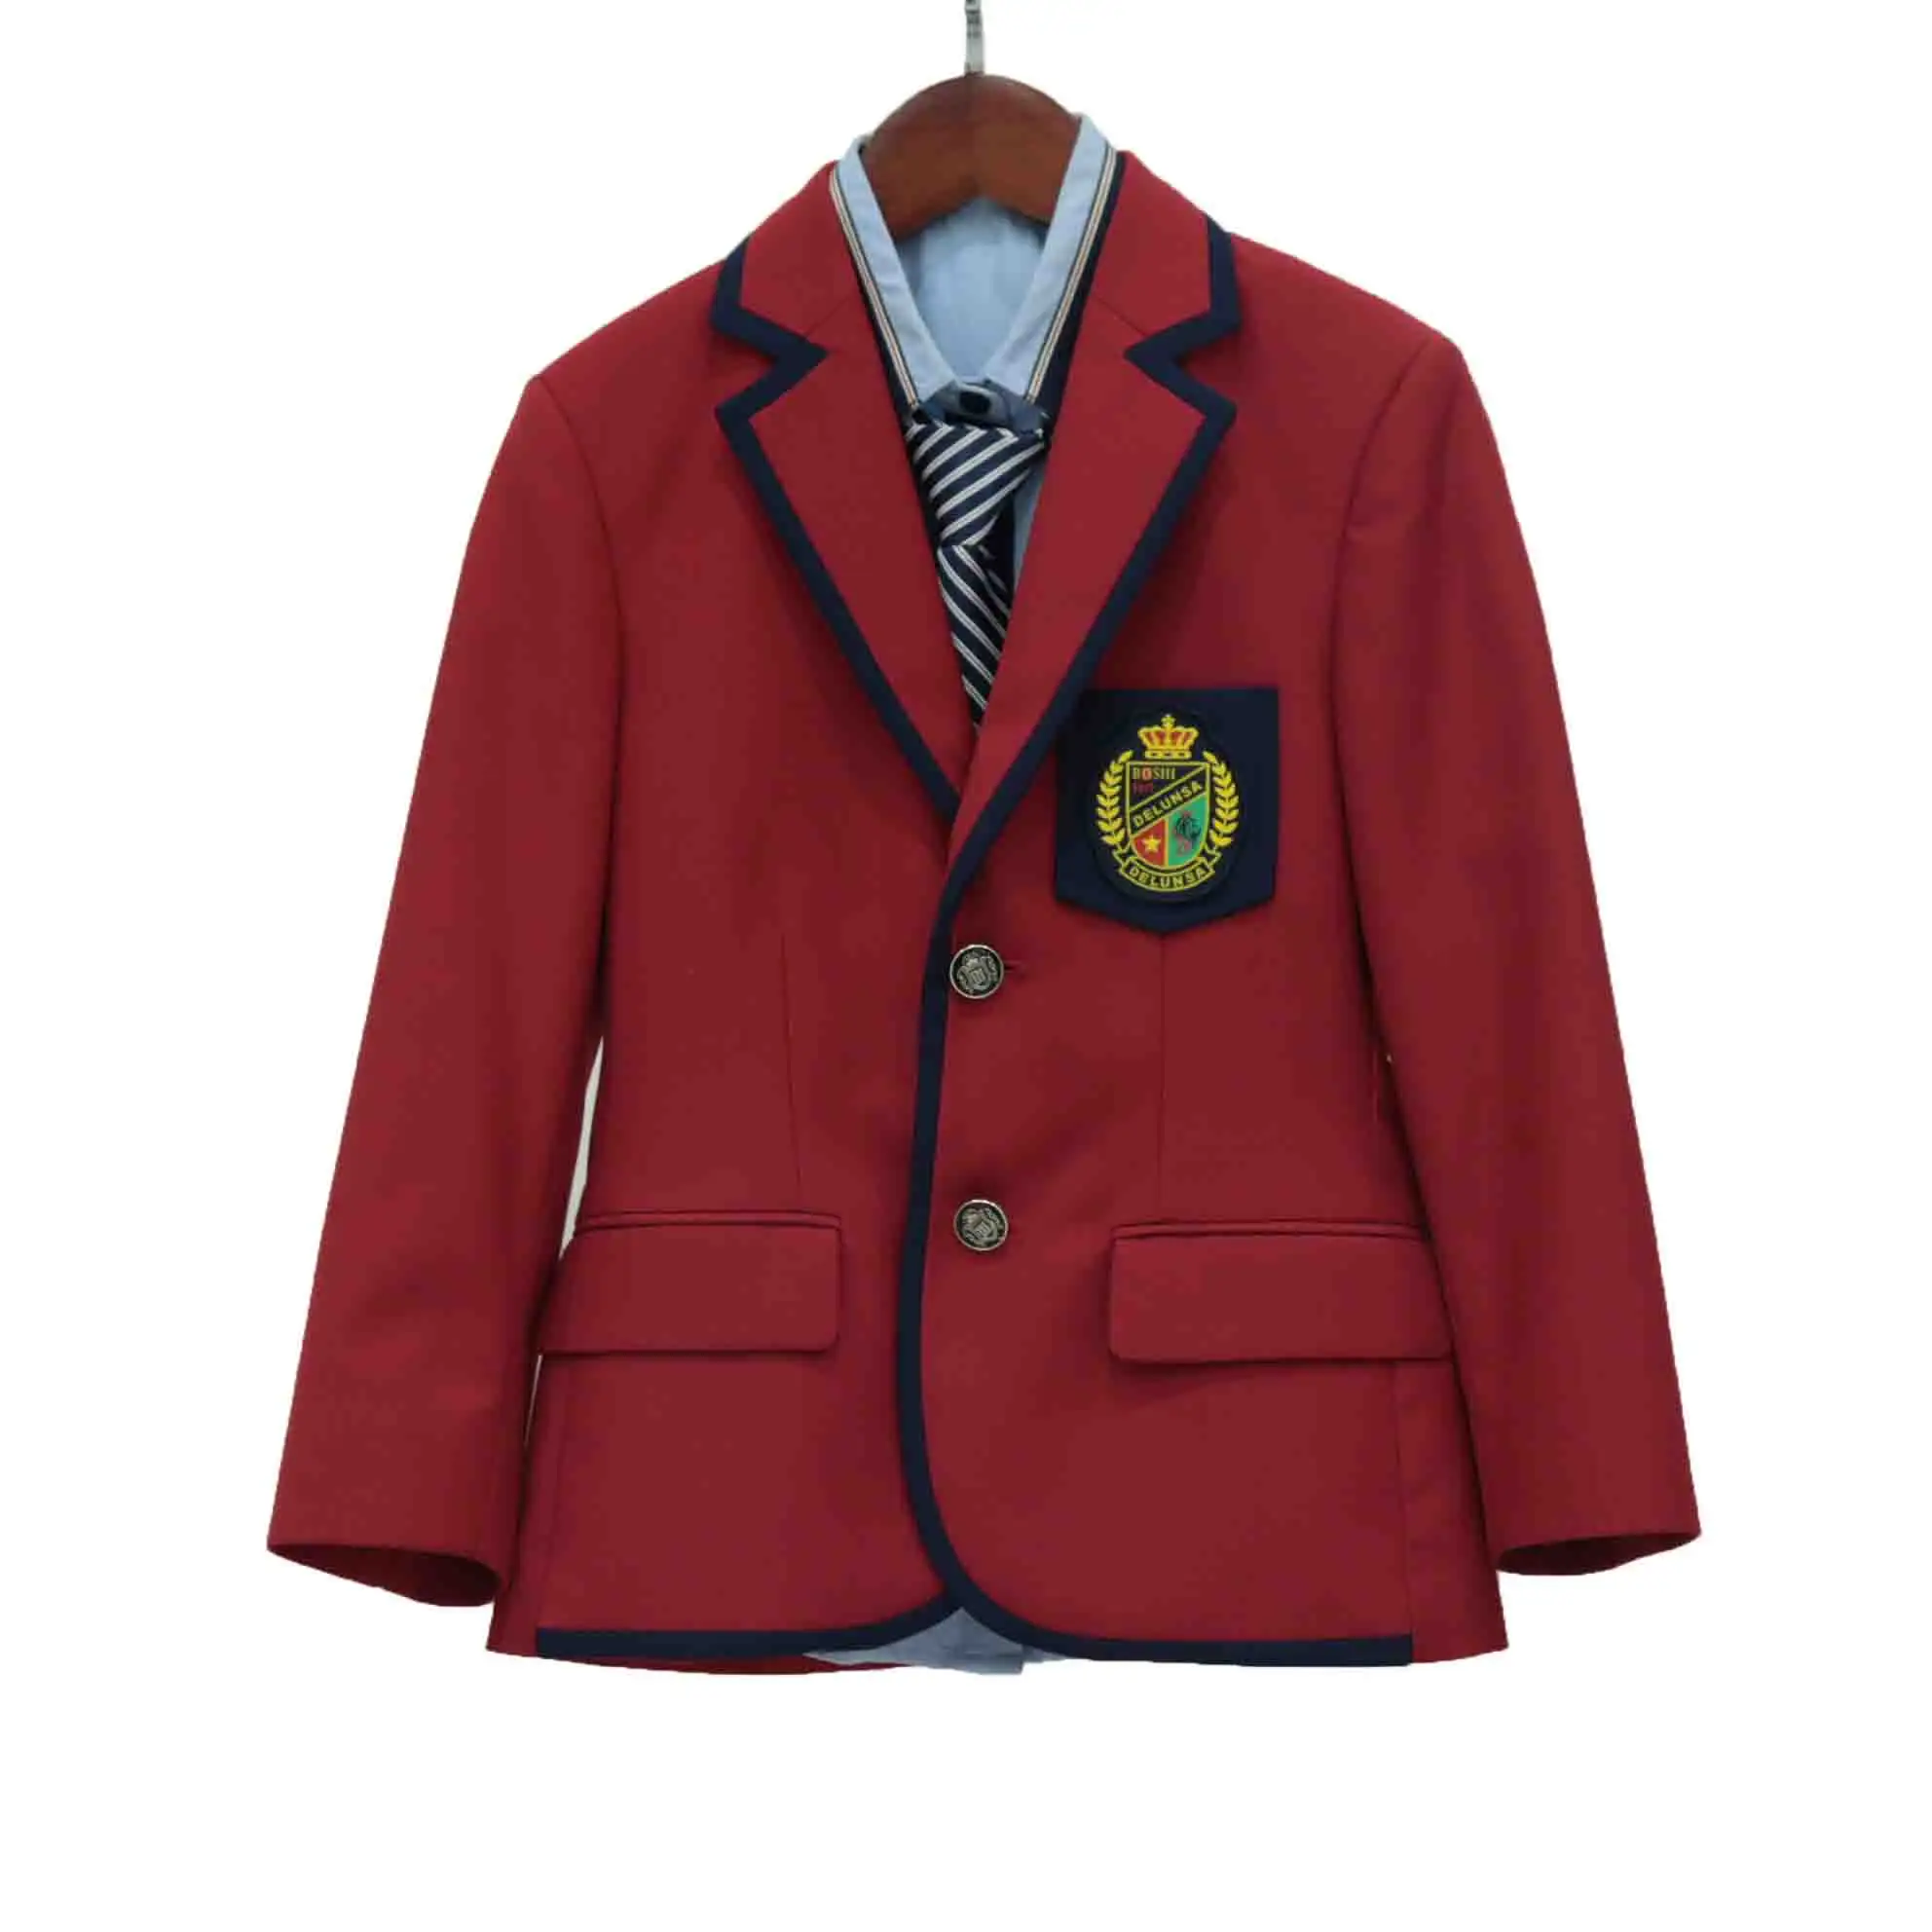 Özel yüksek kalite kore okul üniforması ceket takım okul Blazer erkek ve kız okul giysileri için